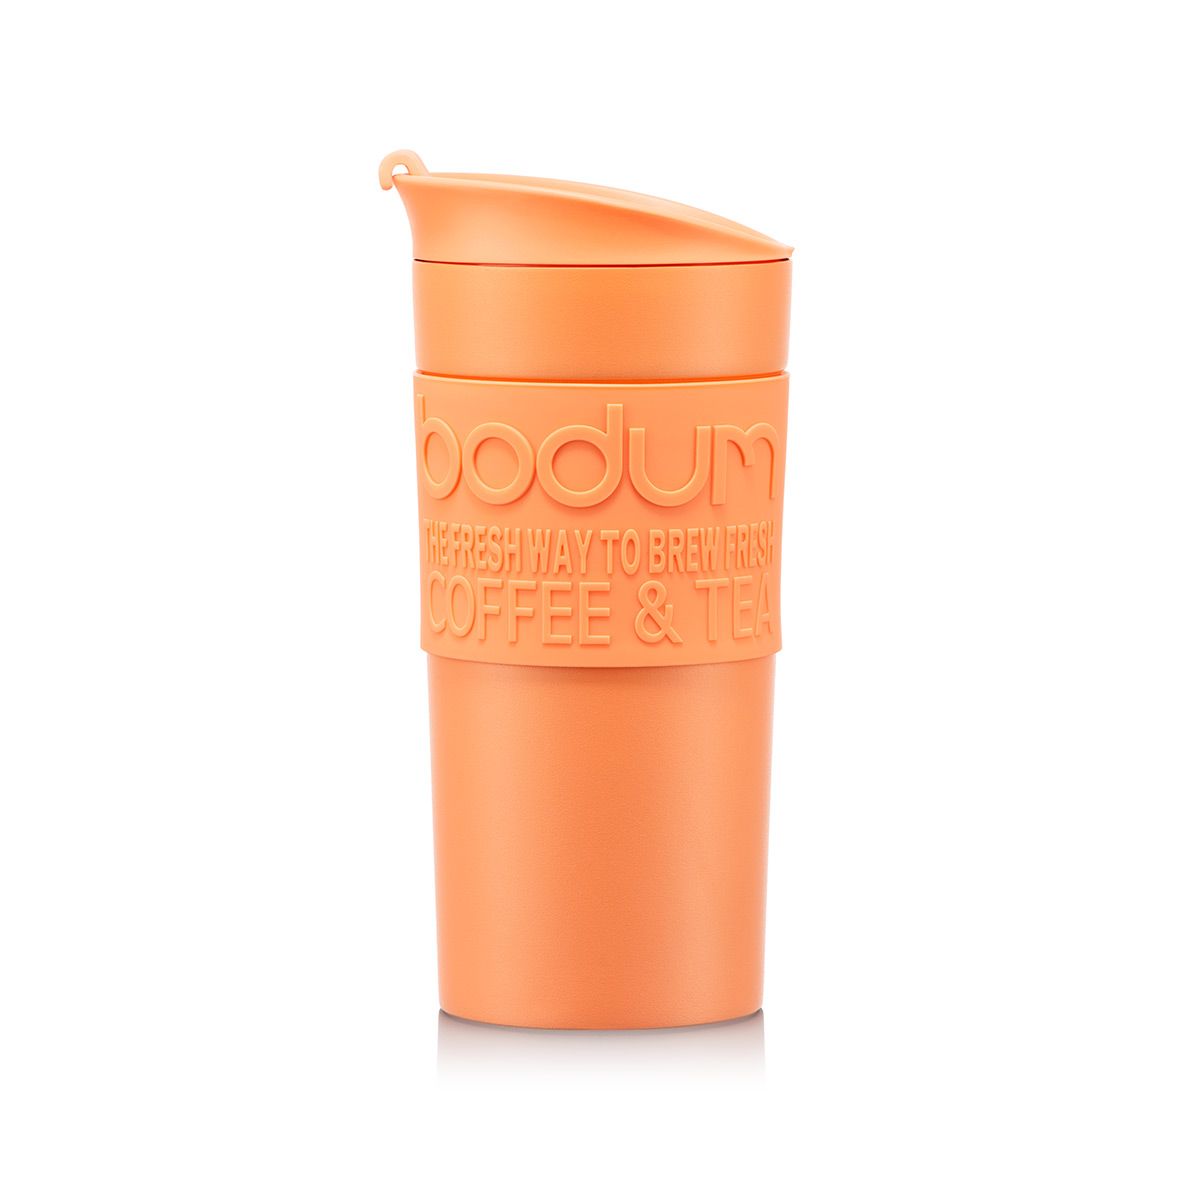 Bodum Travel Mug vide POTABLE tasse 0,35 L Chrome coloré silikonband 11068 nouveau 